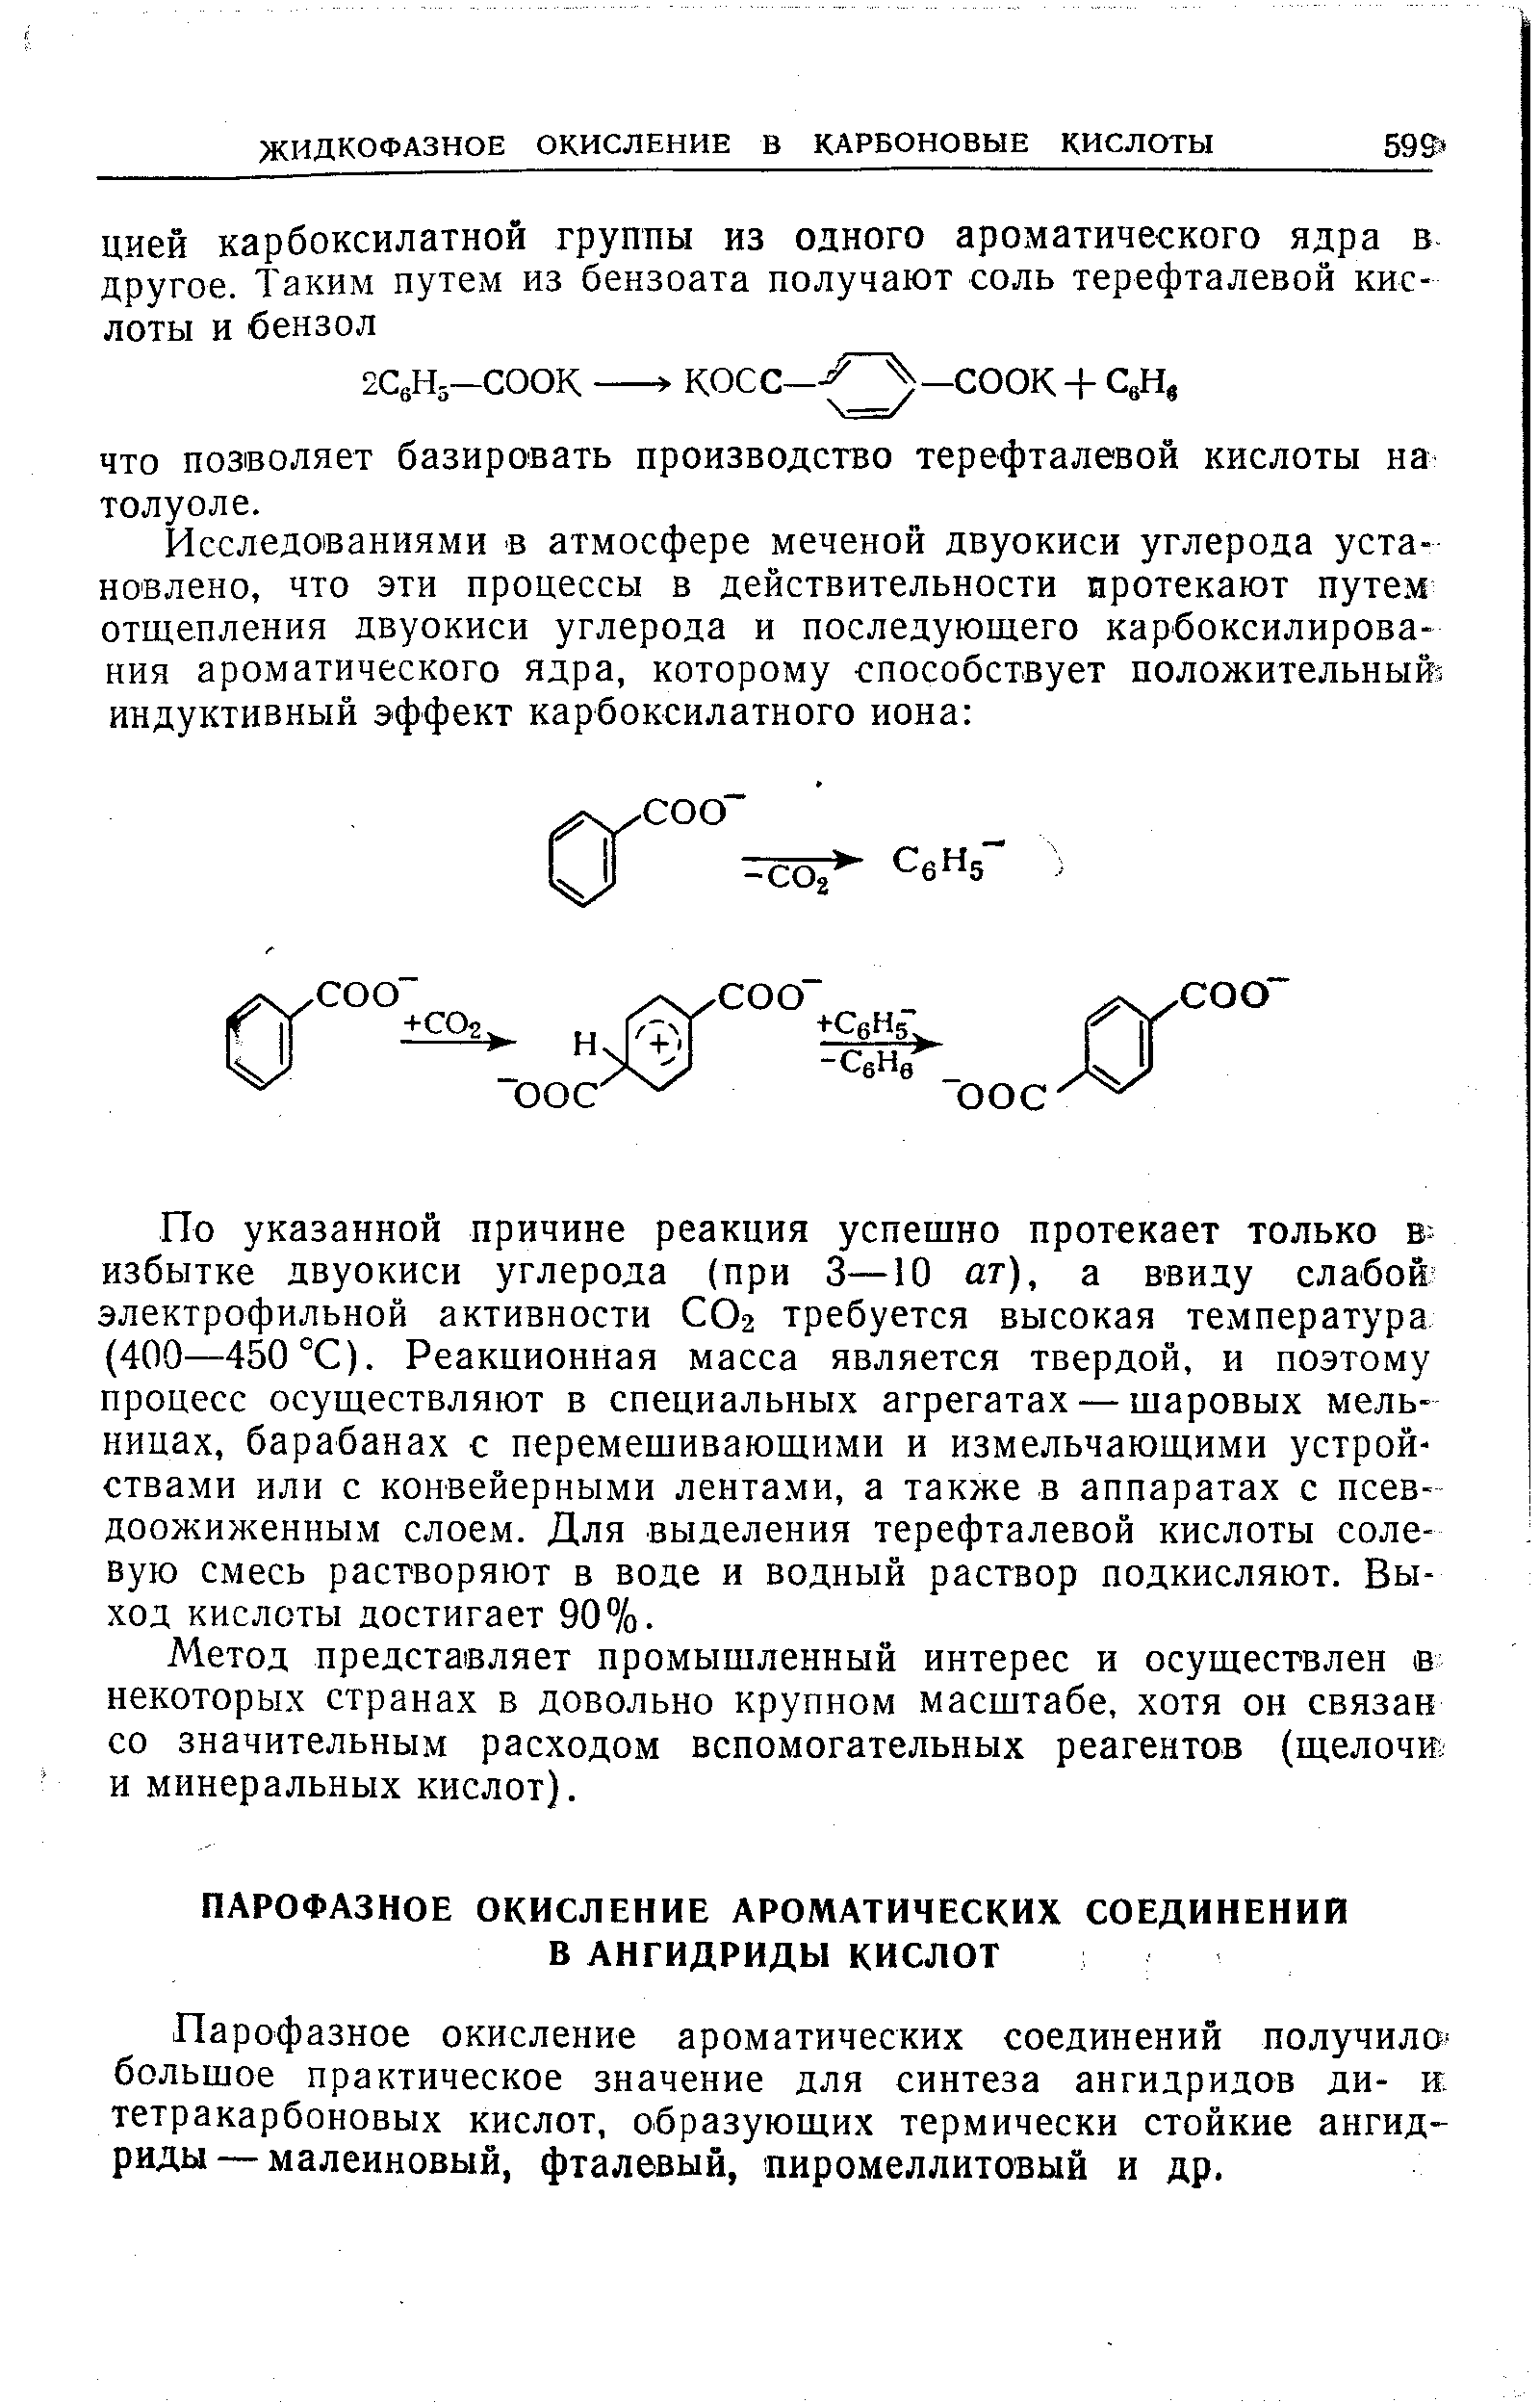 Парофазное окисление ароматических соединений получило большое практическое значение для синтеза ангидридов ди- и. тетракарбоновых кислот, образующих термически стойкие ангидриды— малеиновый, фталевый, пиромеллитовый и др.